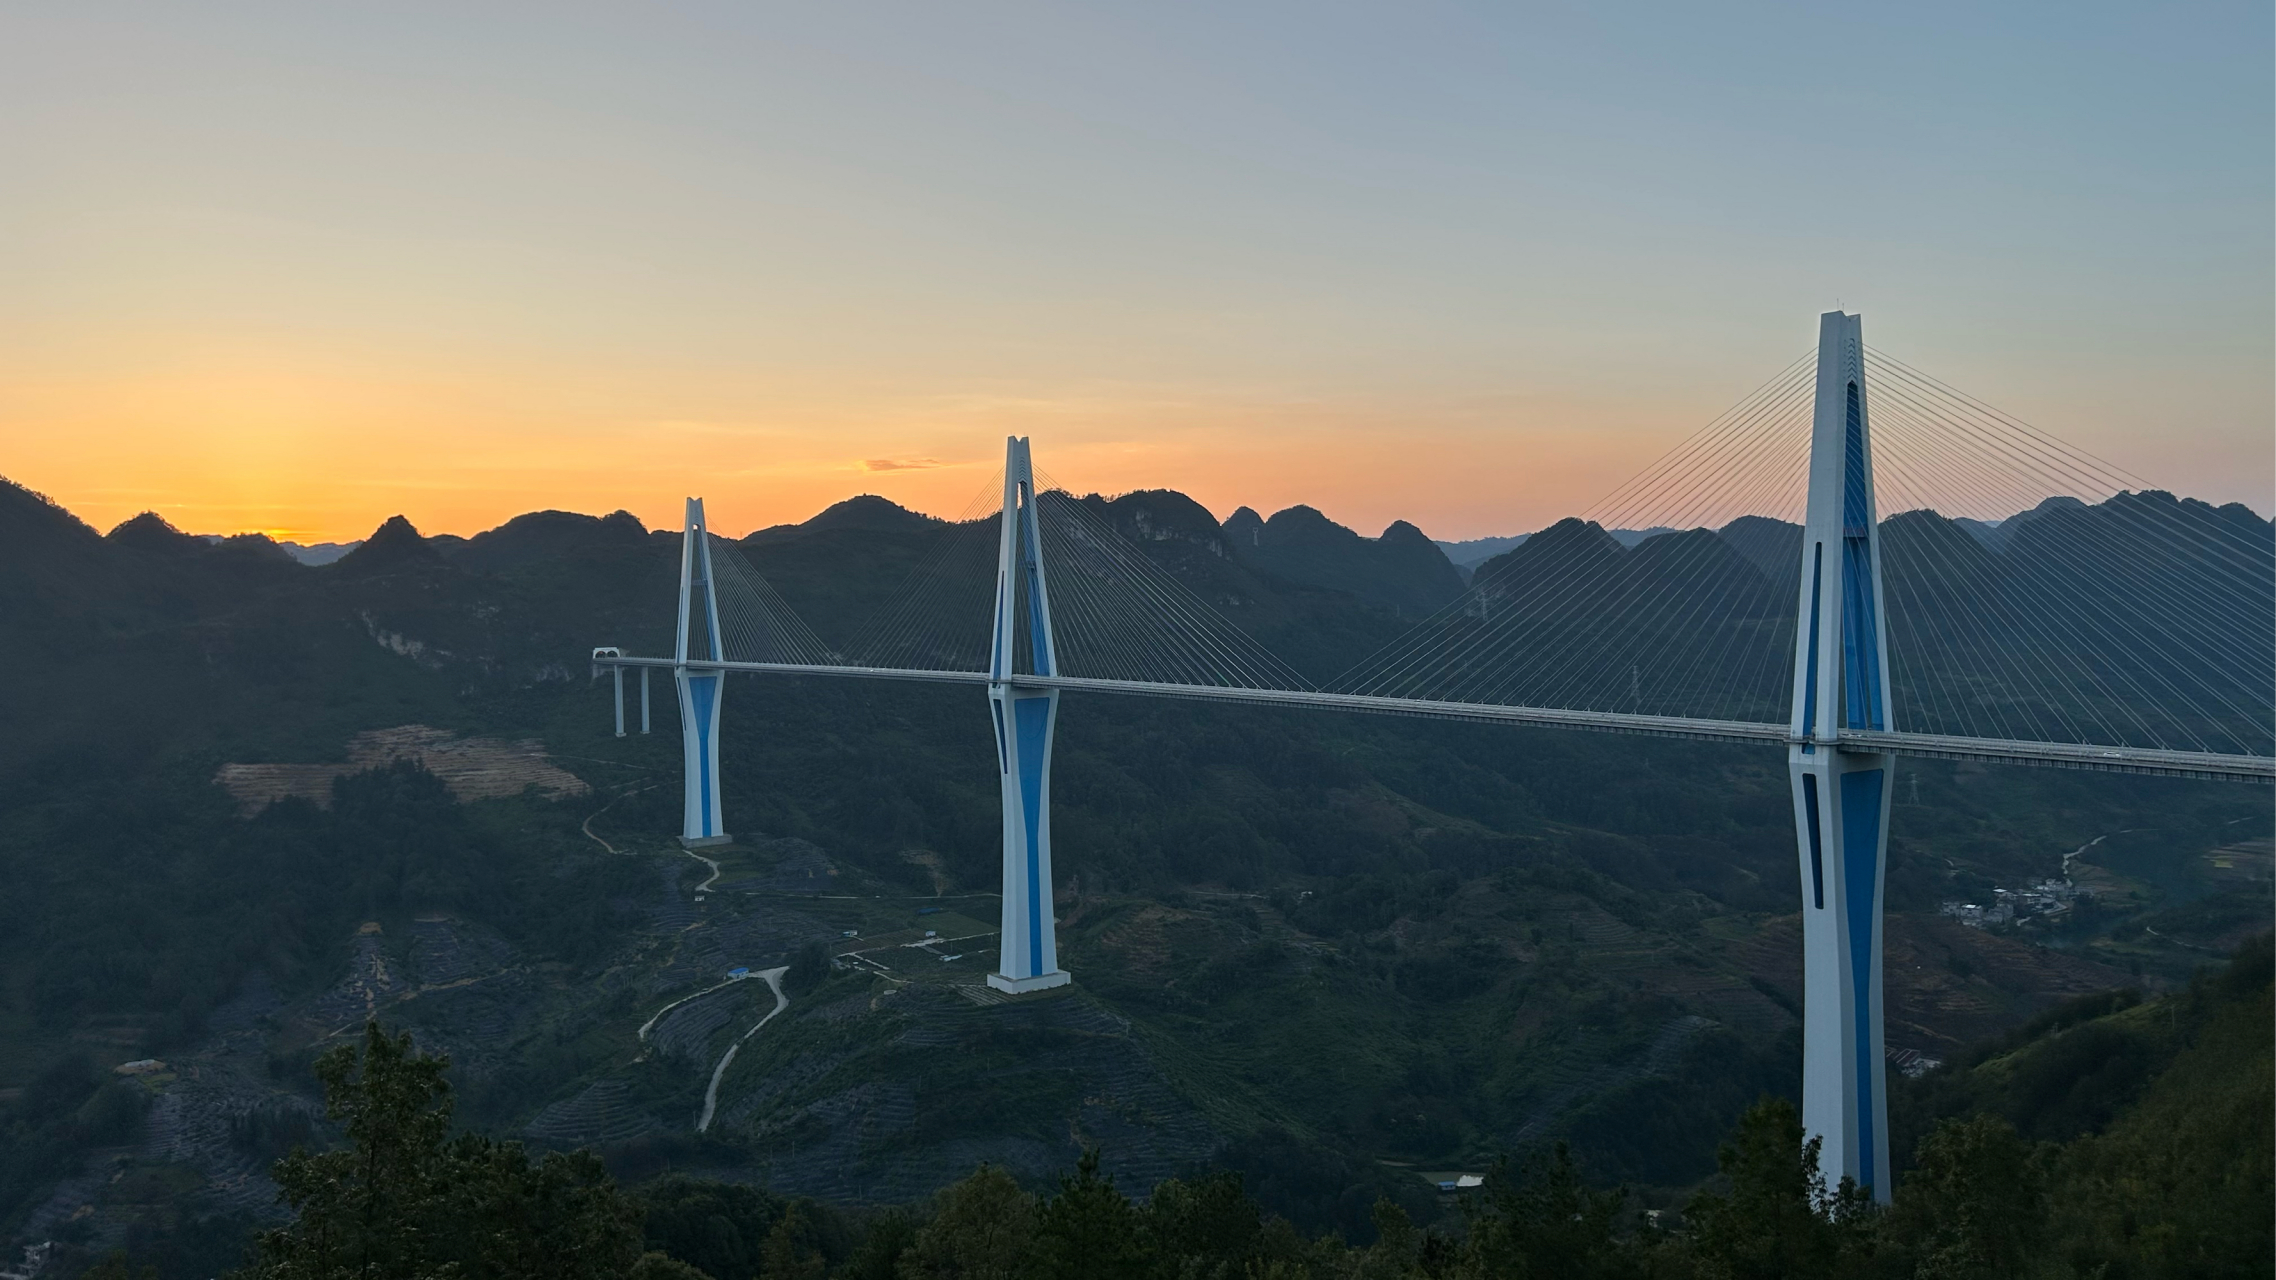 贵州天空之桥风景区图片